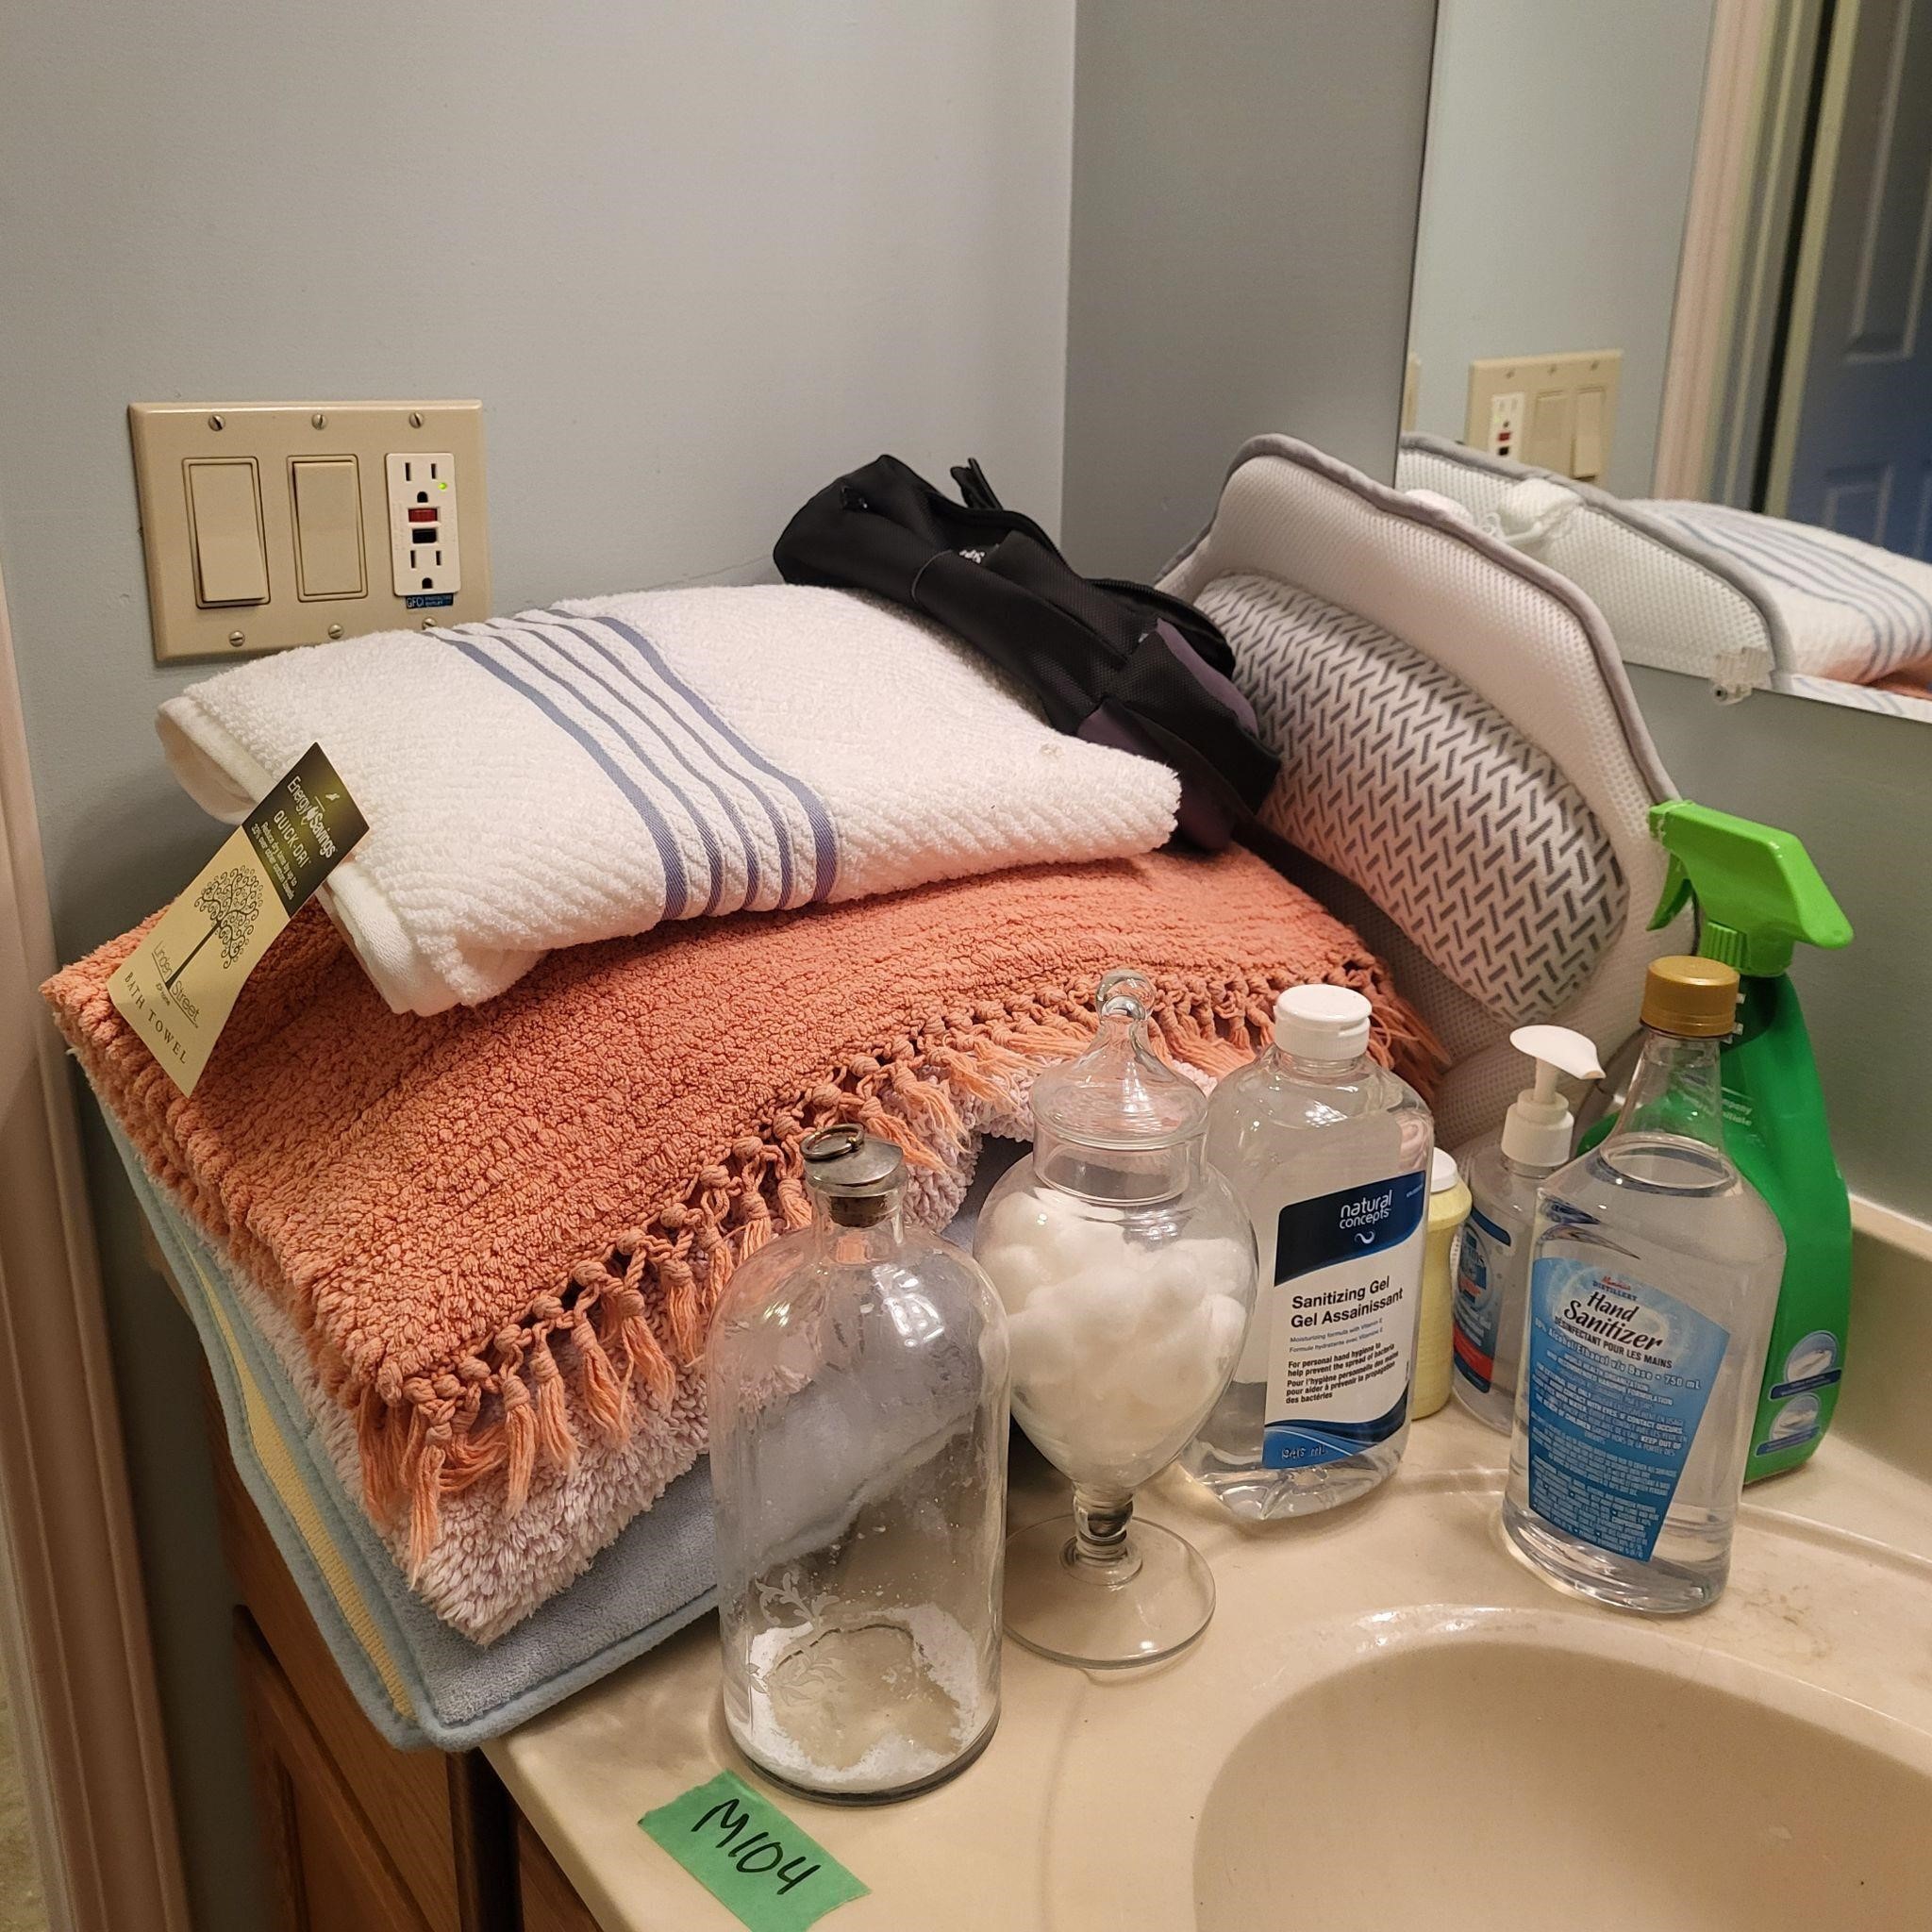 M104 Bath mats Towels and misc bathroom